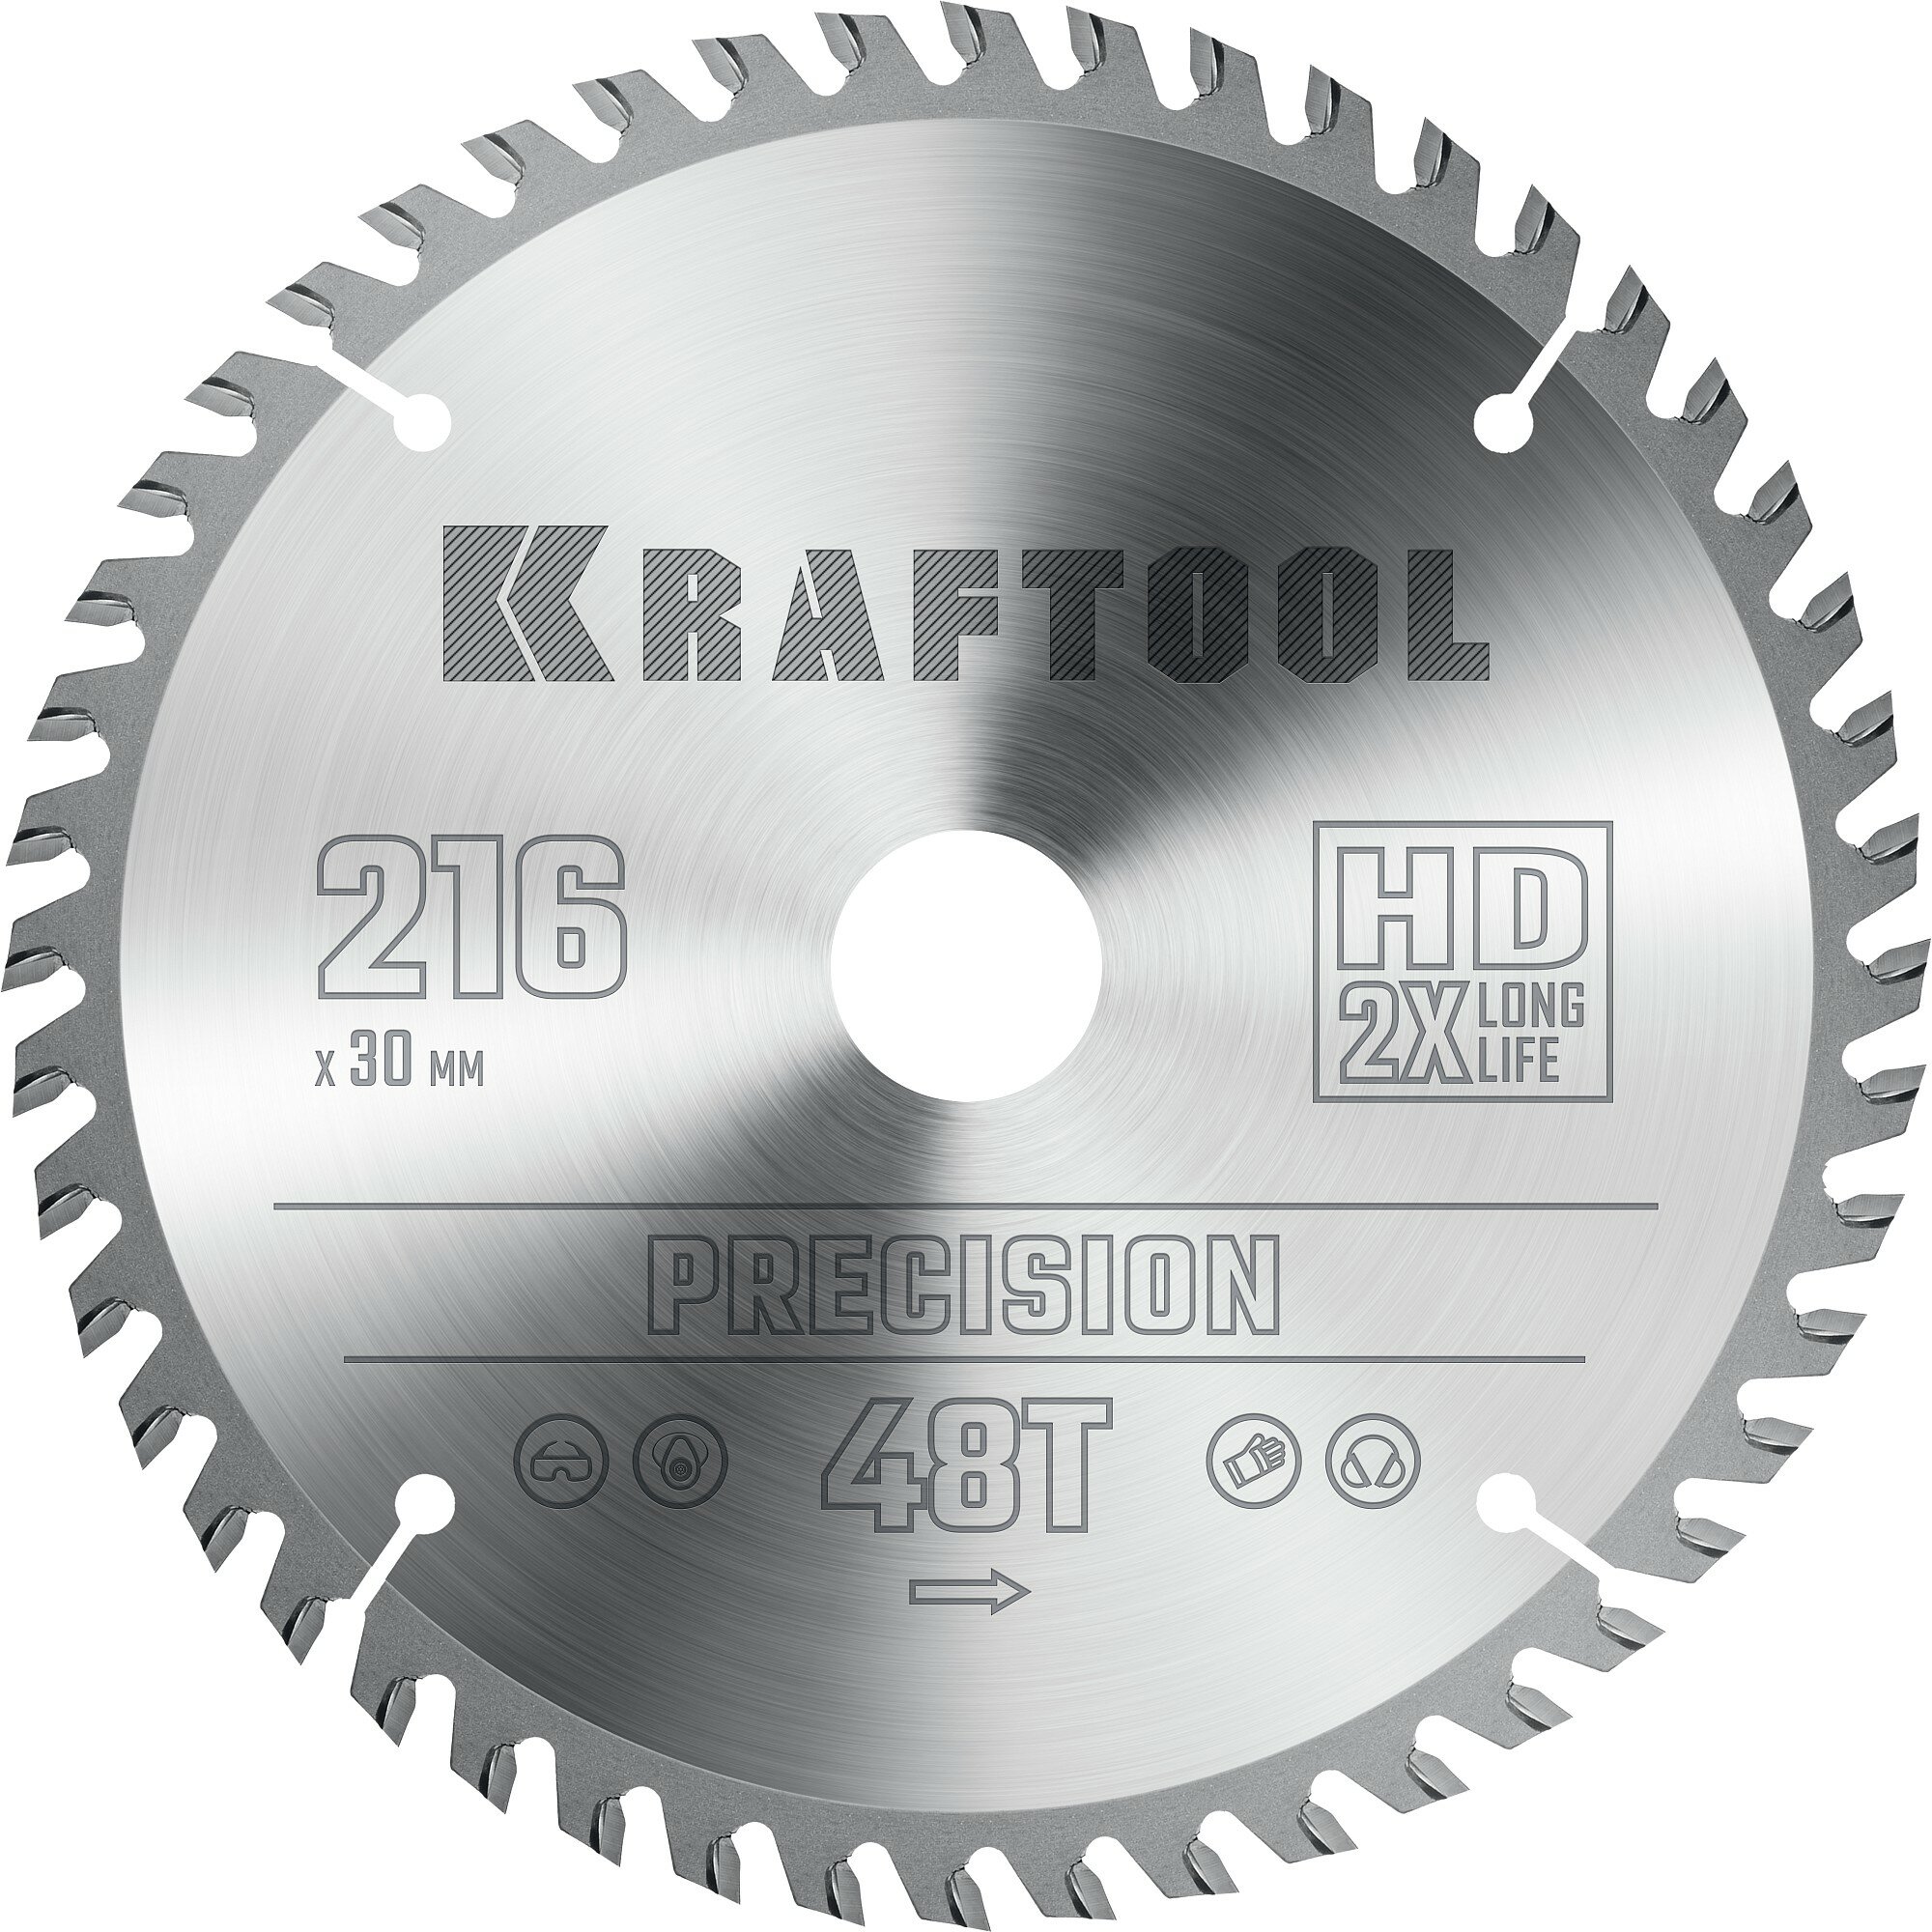 KRAFTOOL Precision, 216 х 30 мм, 48Т, пильный диск по дереву (36952-216-30)